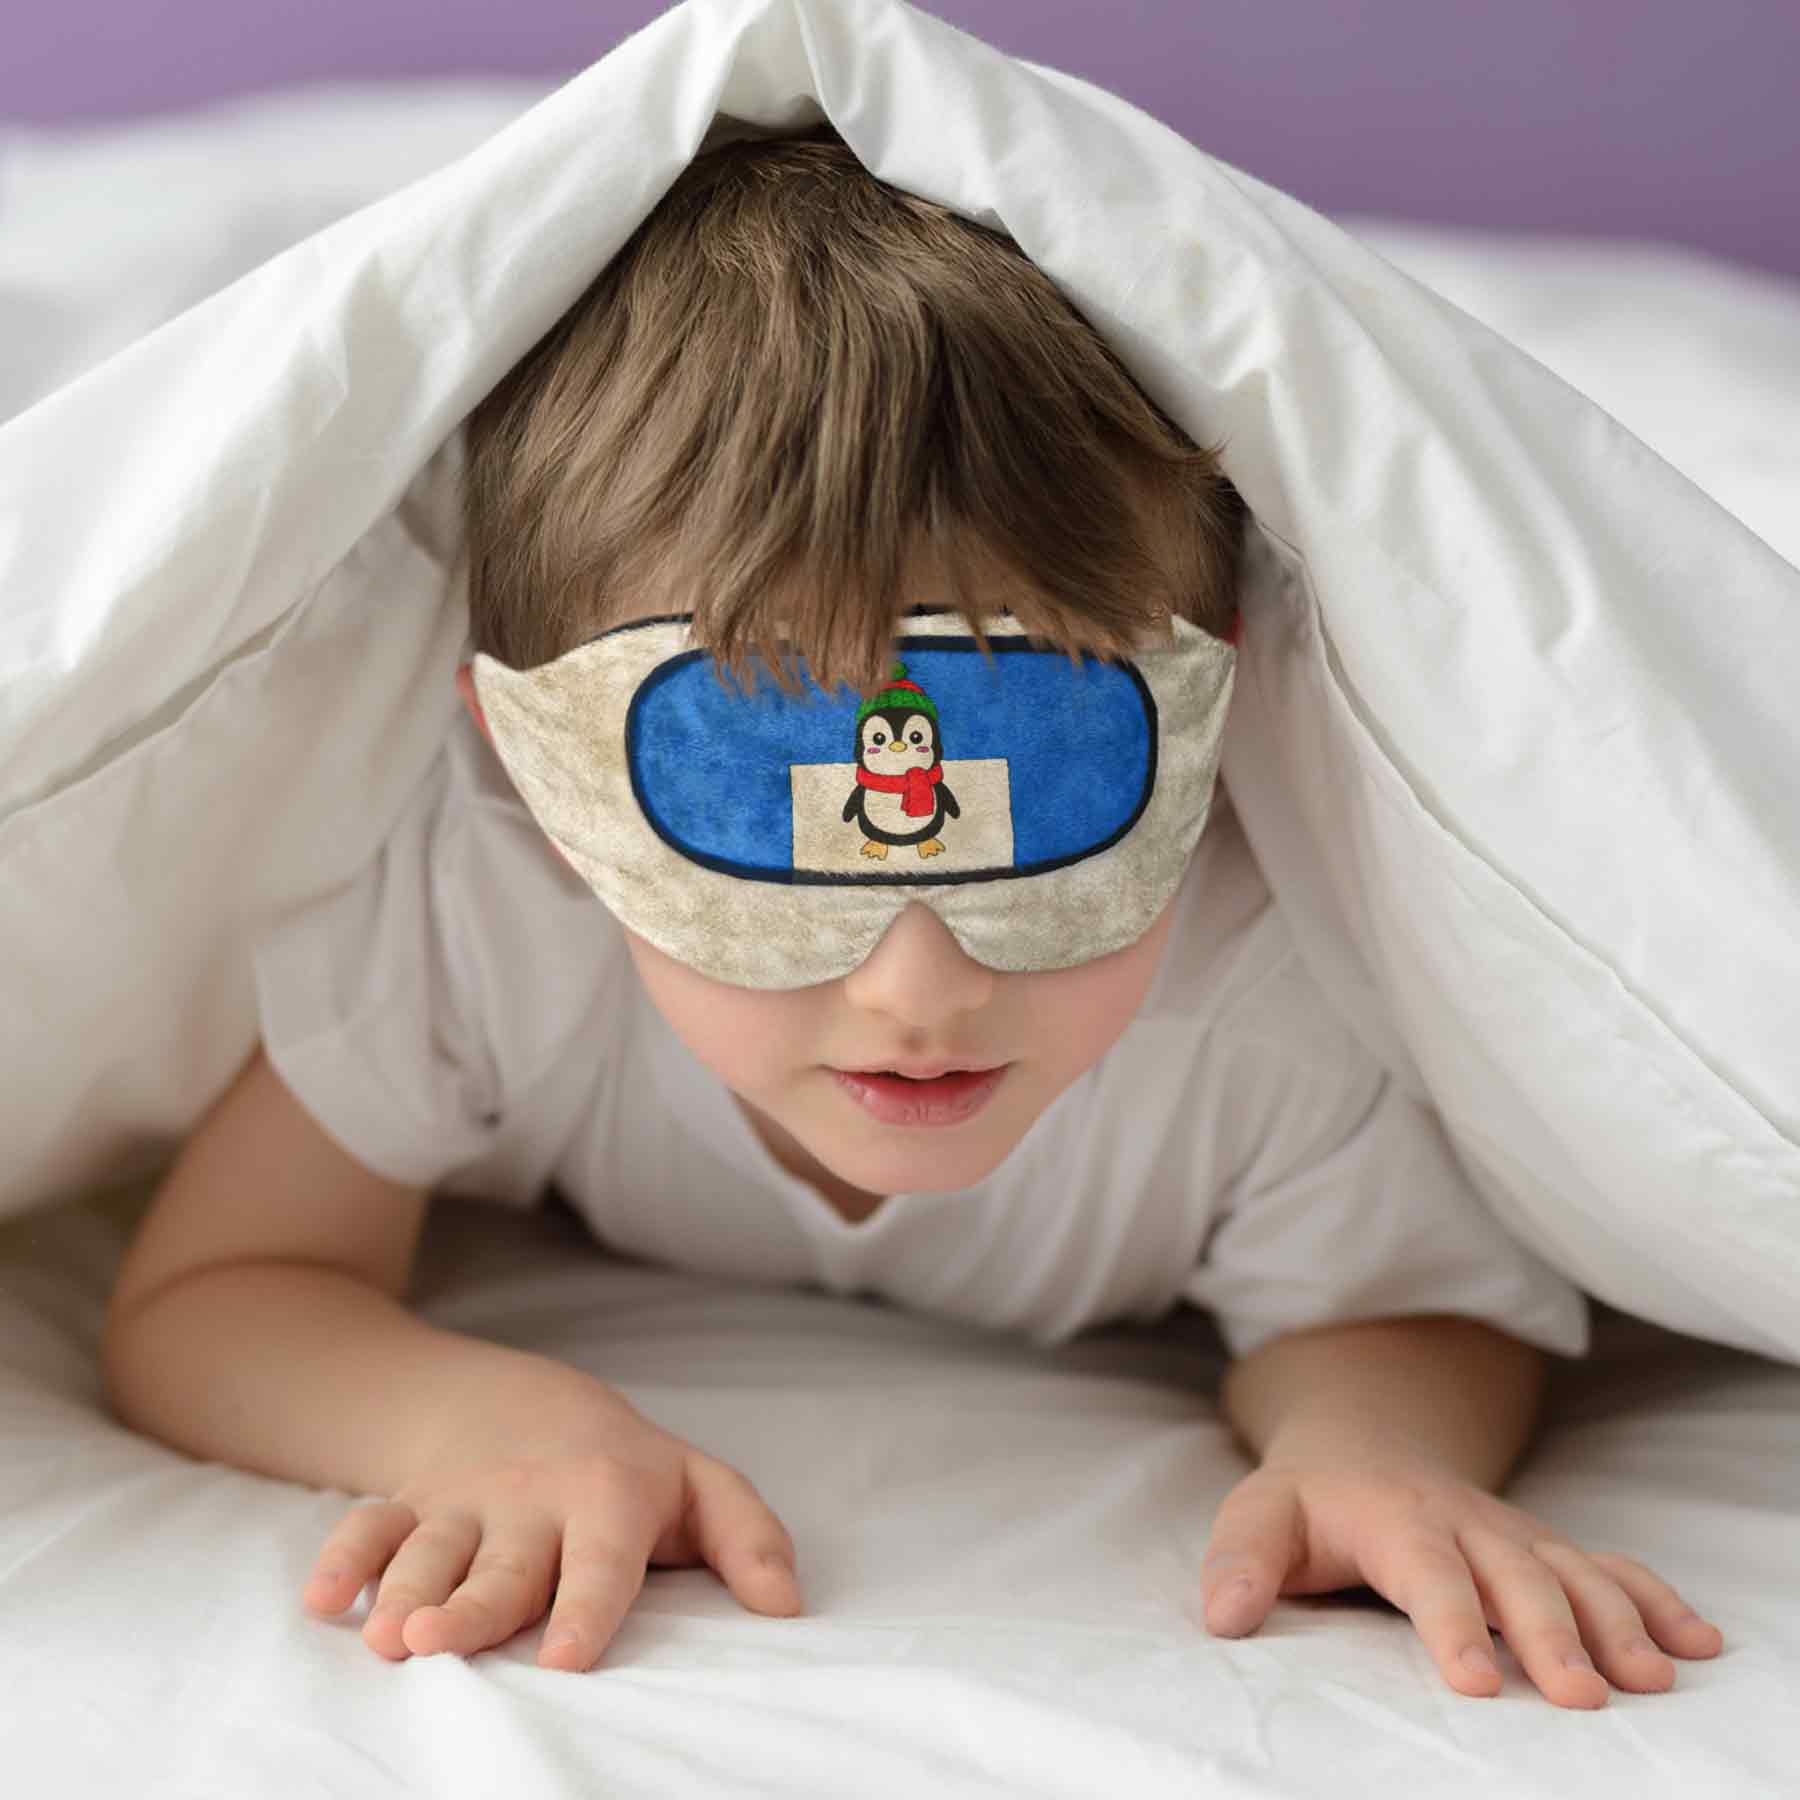 چشم بند خواب کورال از برند کاوا ماسک مخصوص بچه ها